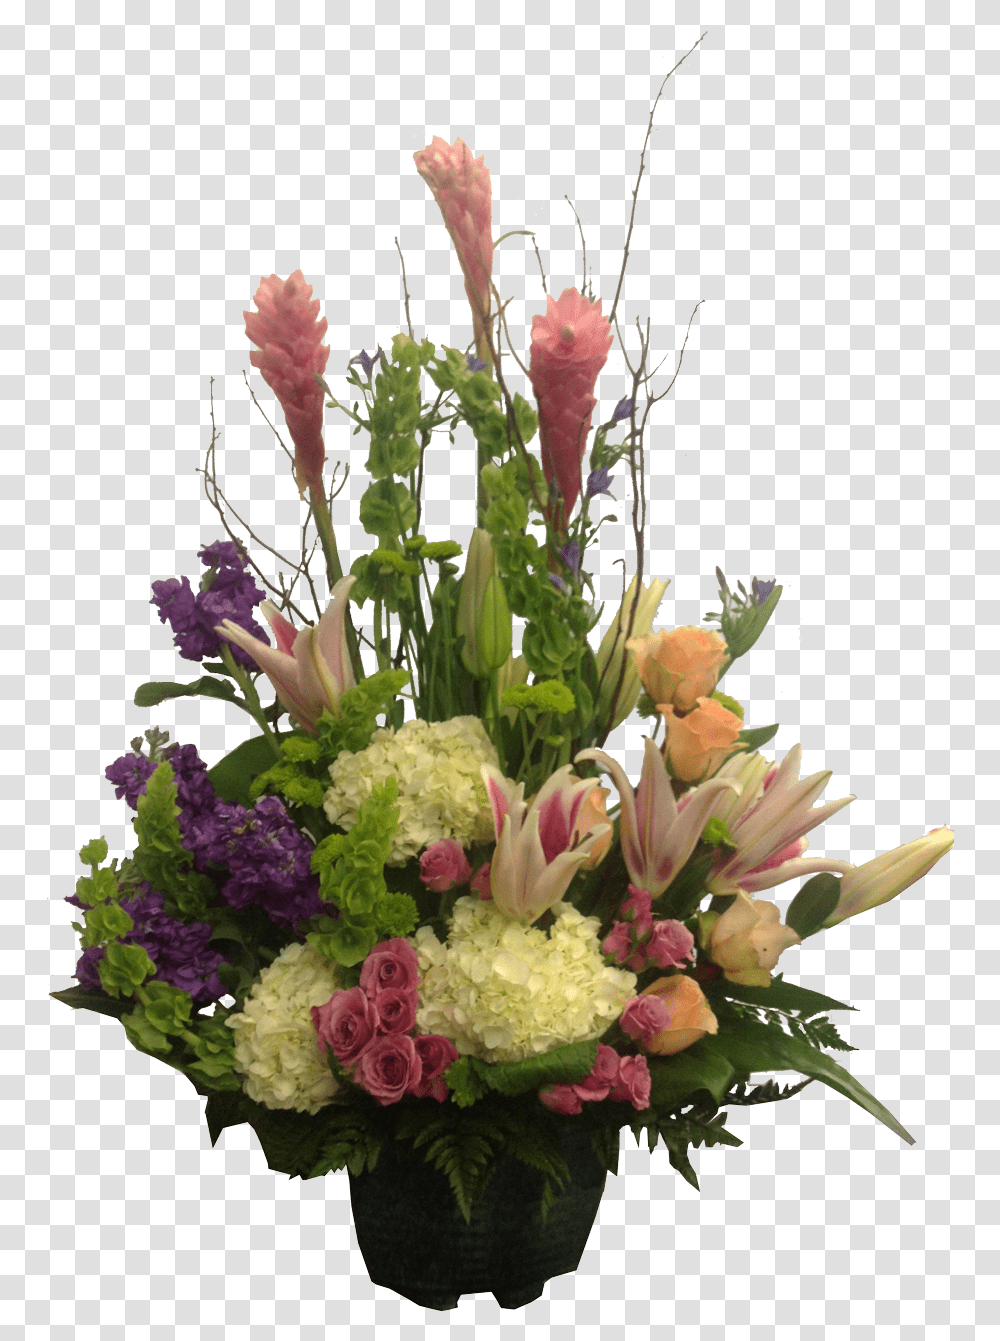 Infinity Romance Flower Arrangement Flora Funeral Tall Floral Arrangement, Plant, Blossom, Ikebana, Art Transparent Png